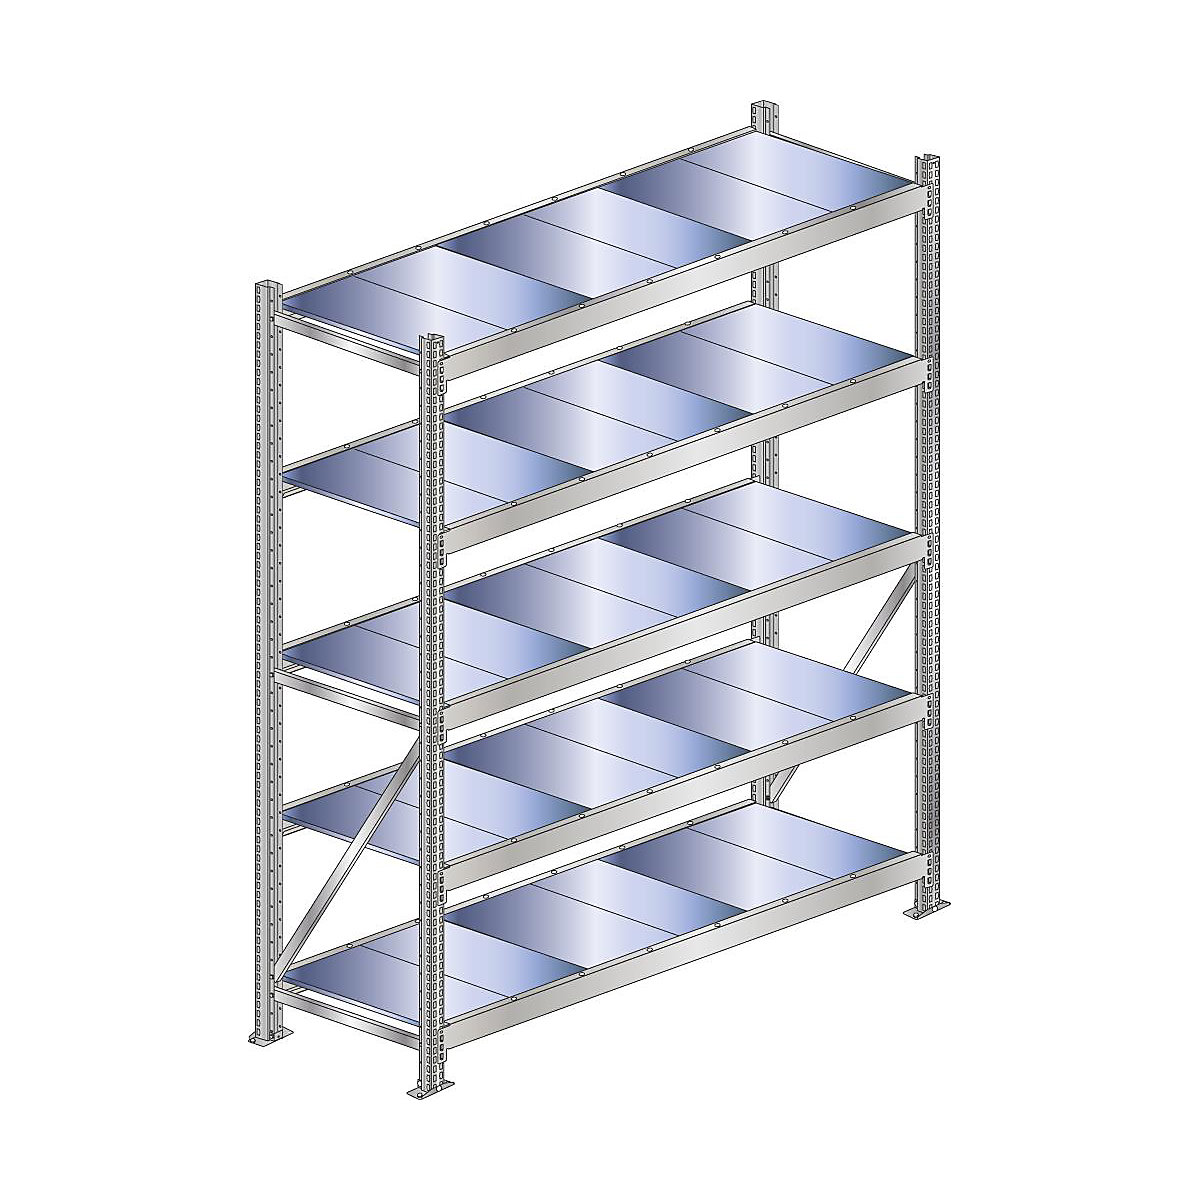 Wide span shelf unit, shelf load 500 kg – SCHULTE, shelf width 2250 mm, standard shelf unit, height 3000 mm, depth 500 mm